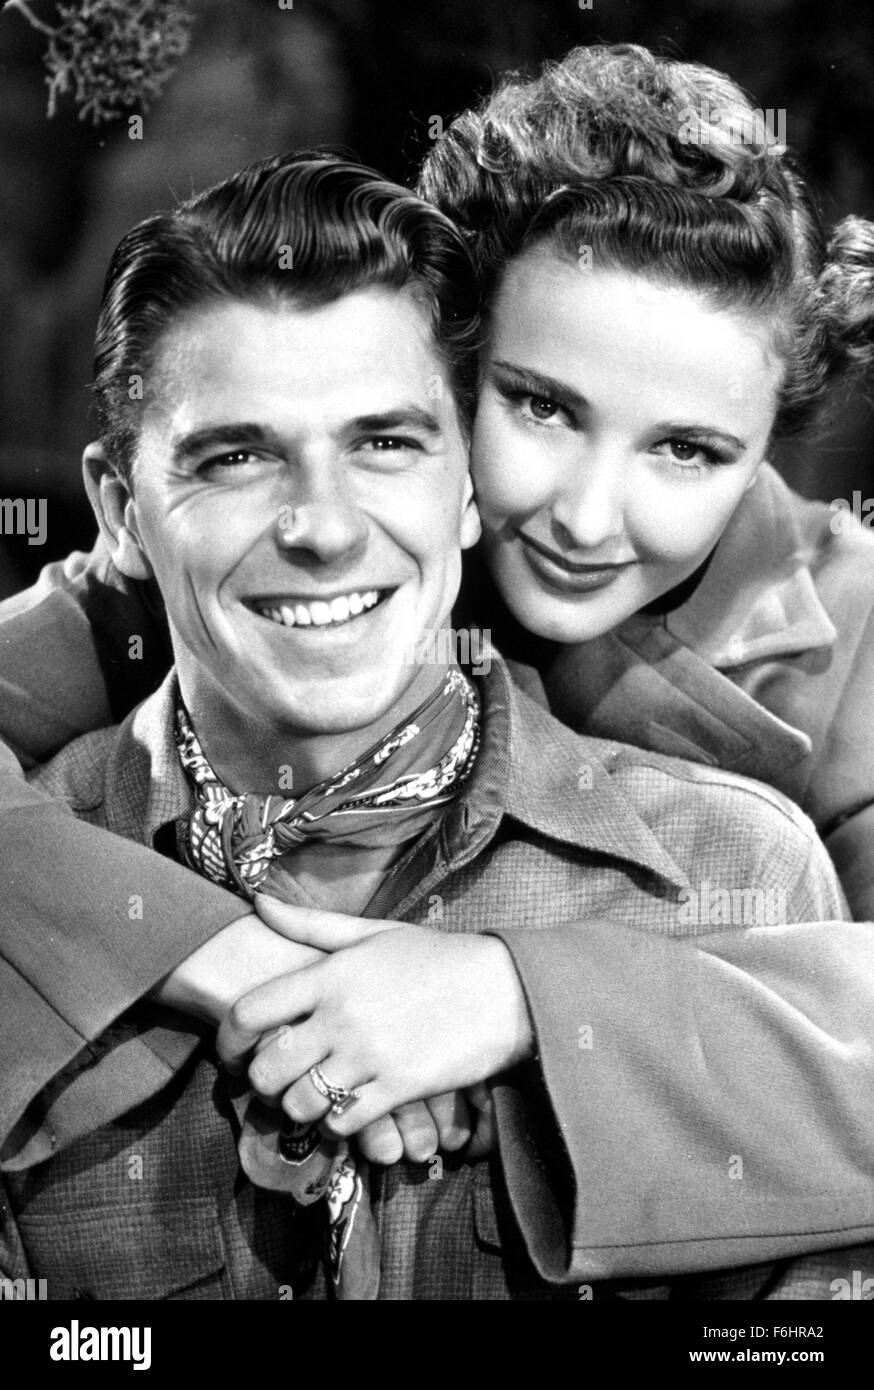 1941, le titre du film : BAD MAN, Directeur : RICHARD THORPE, Studio : MGM, Photo : LARAINE DAY, RONALD REAGAN, femme embrassant de derrière, souriant, en couple. (Crédit Image : SNAP) Banque D'Images